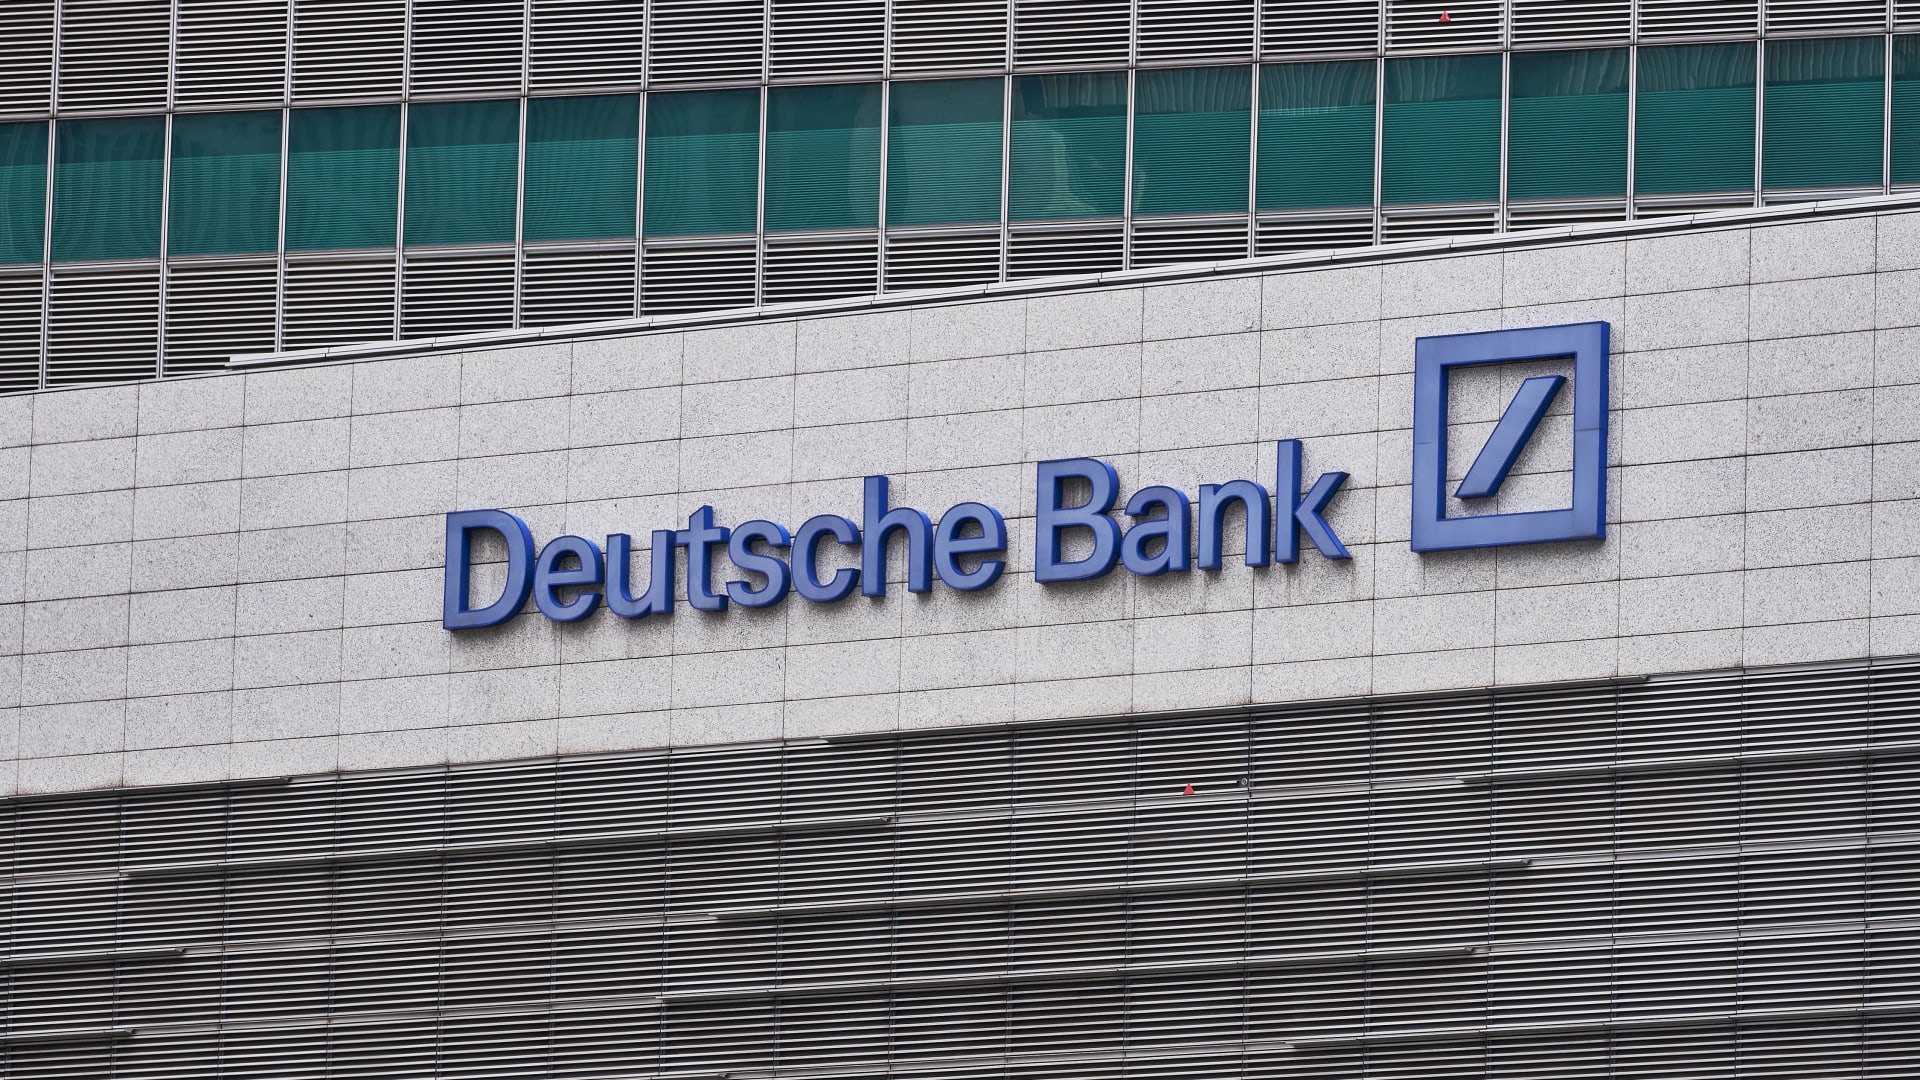 Deutsche Bank results 1st quarter 2022